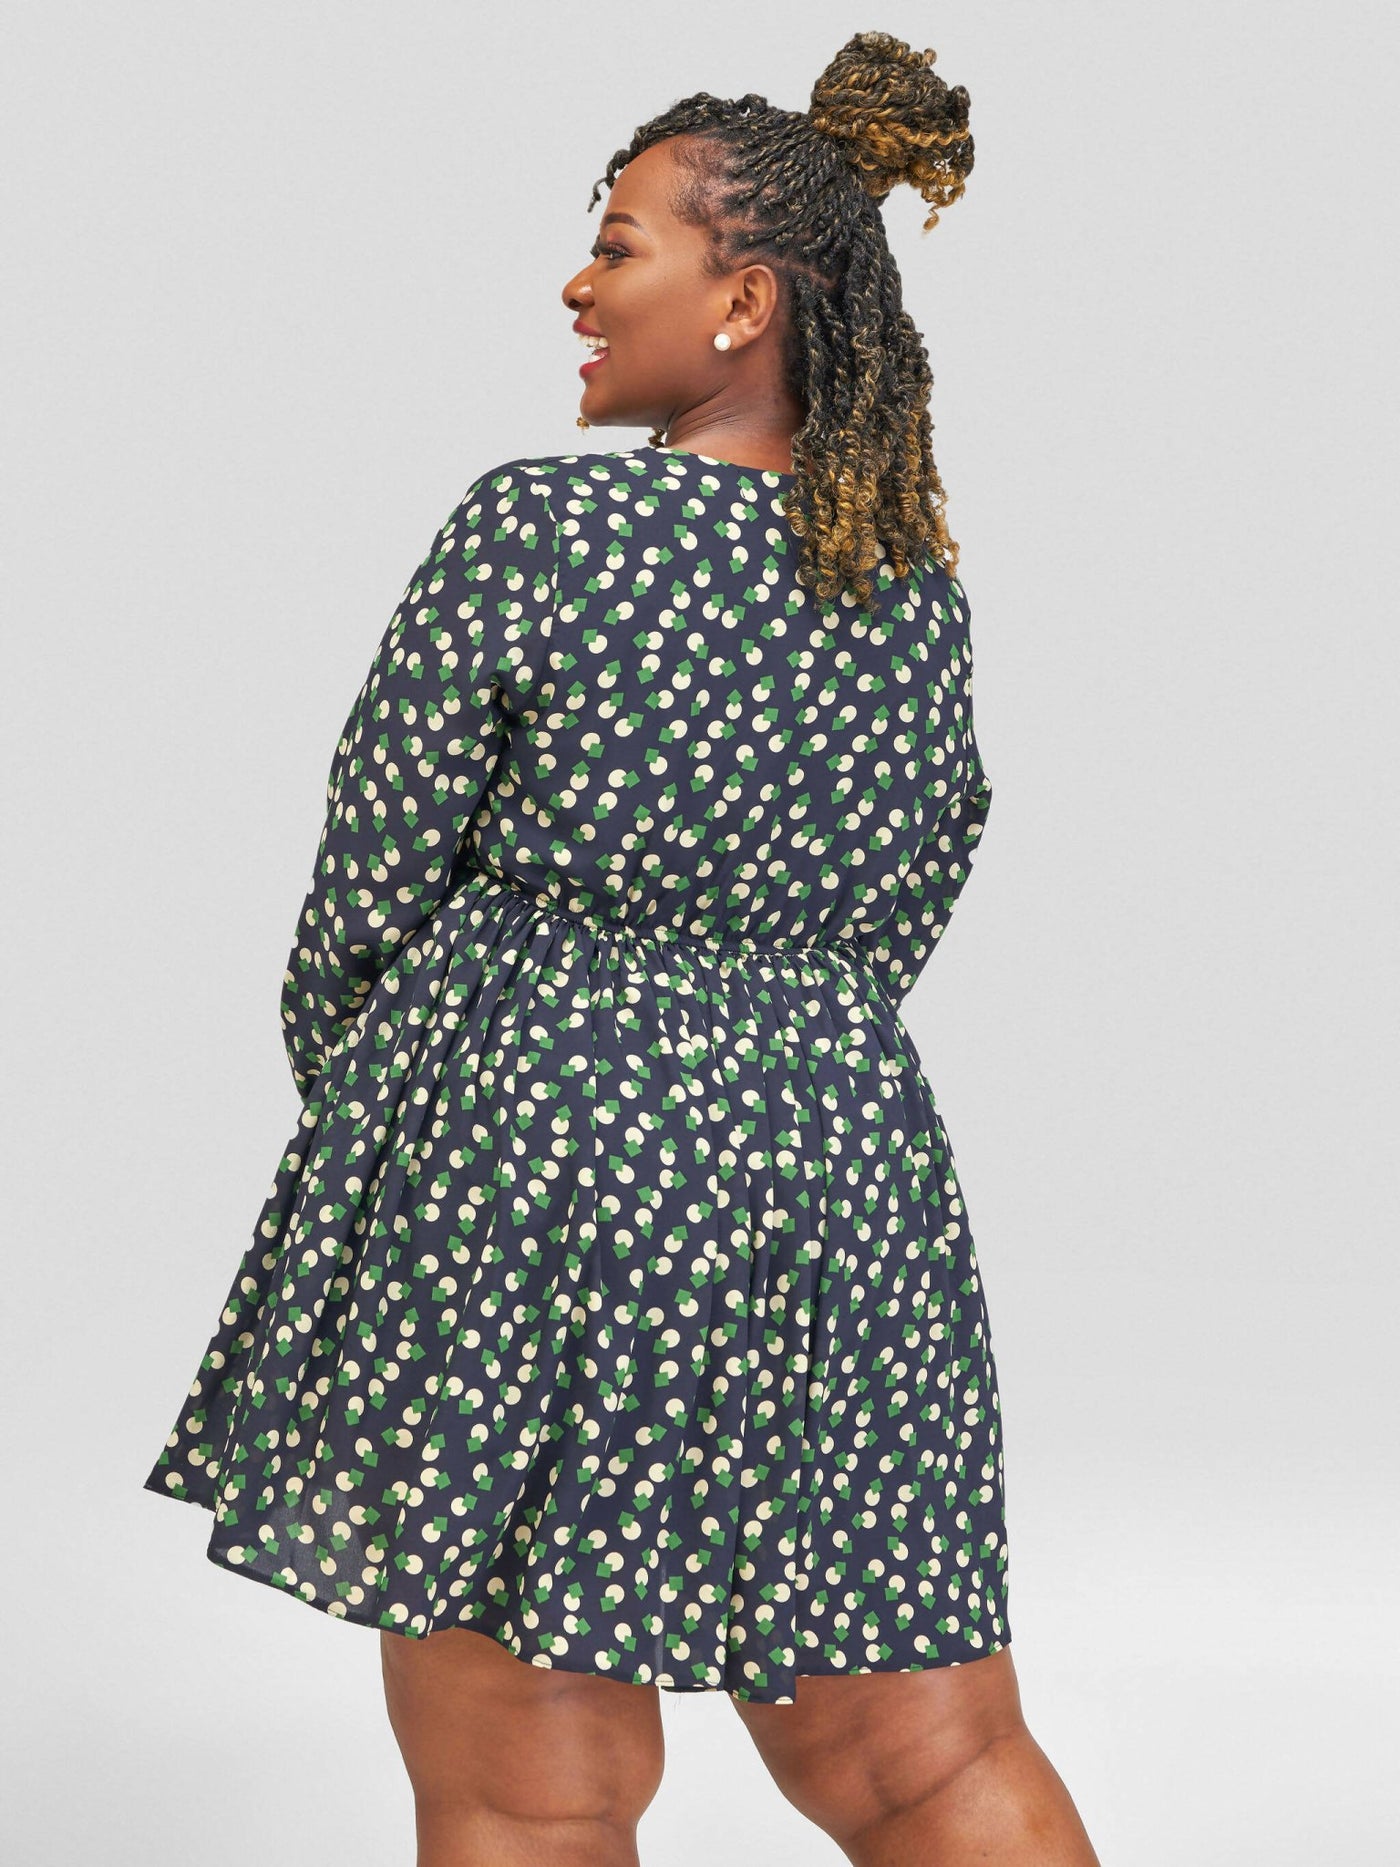 Salok Havilah Chloe Skater Dress - Green Print - Shopzetu